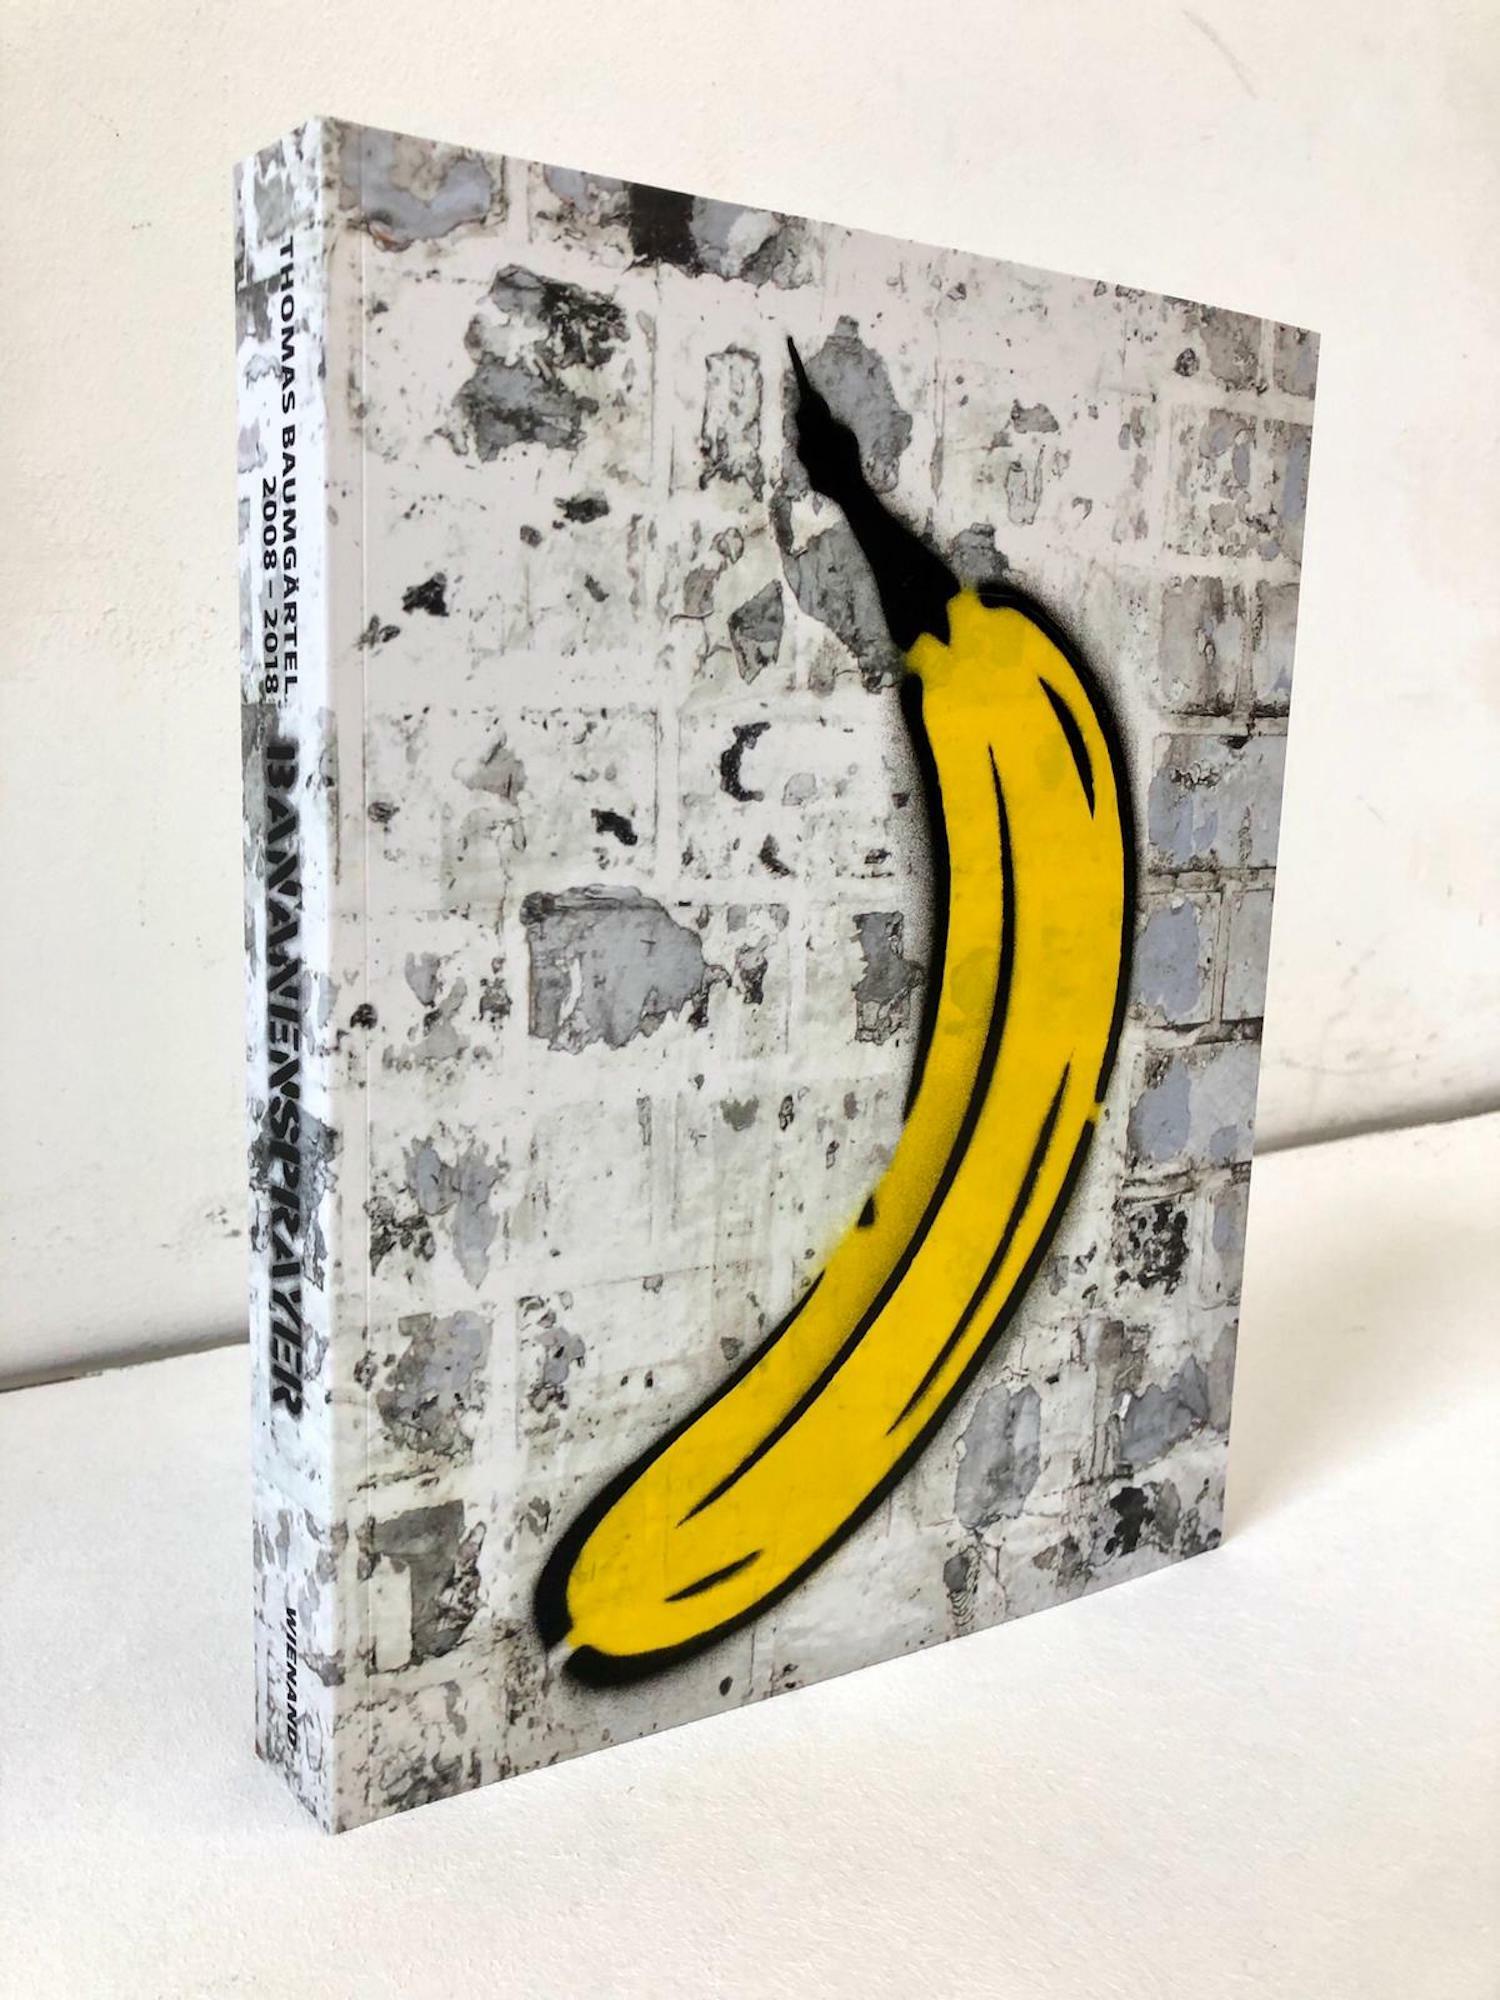 Object "Boek met handgespoten banaan" (2019) von Thomas Baumgärtel